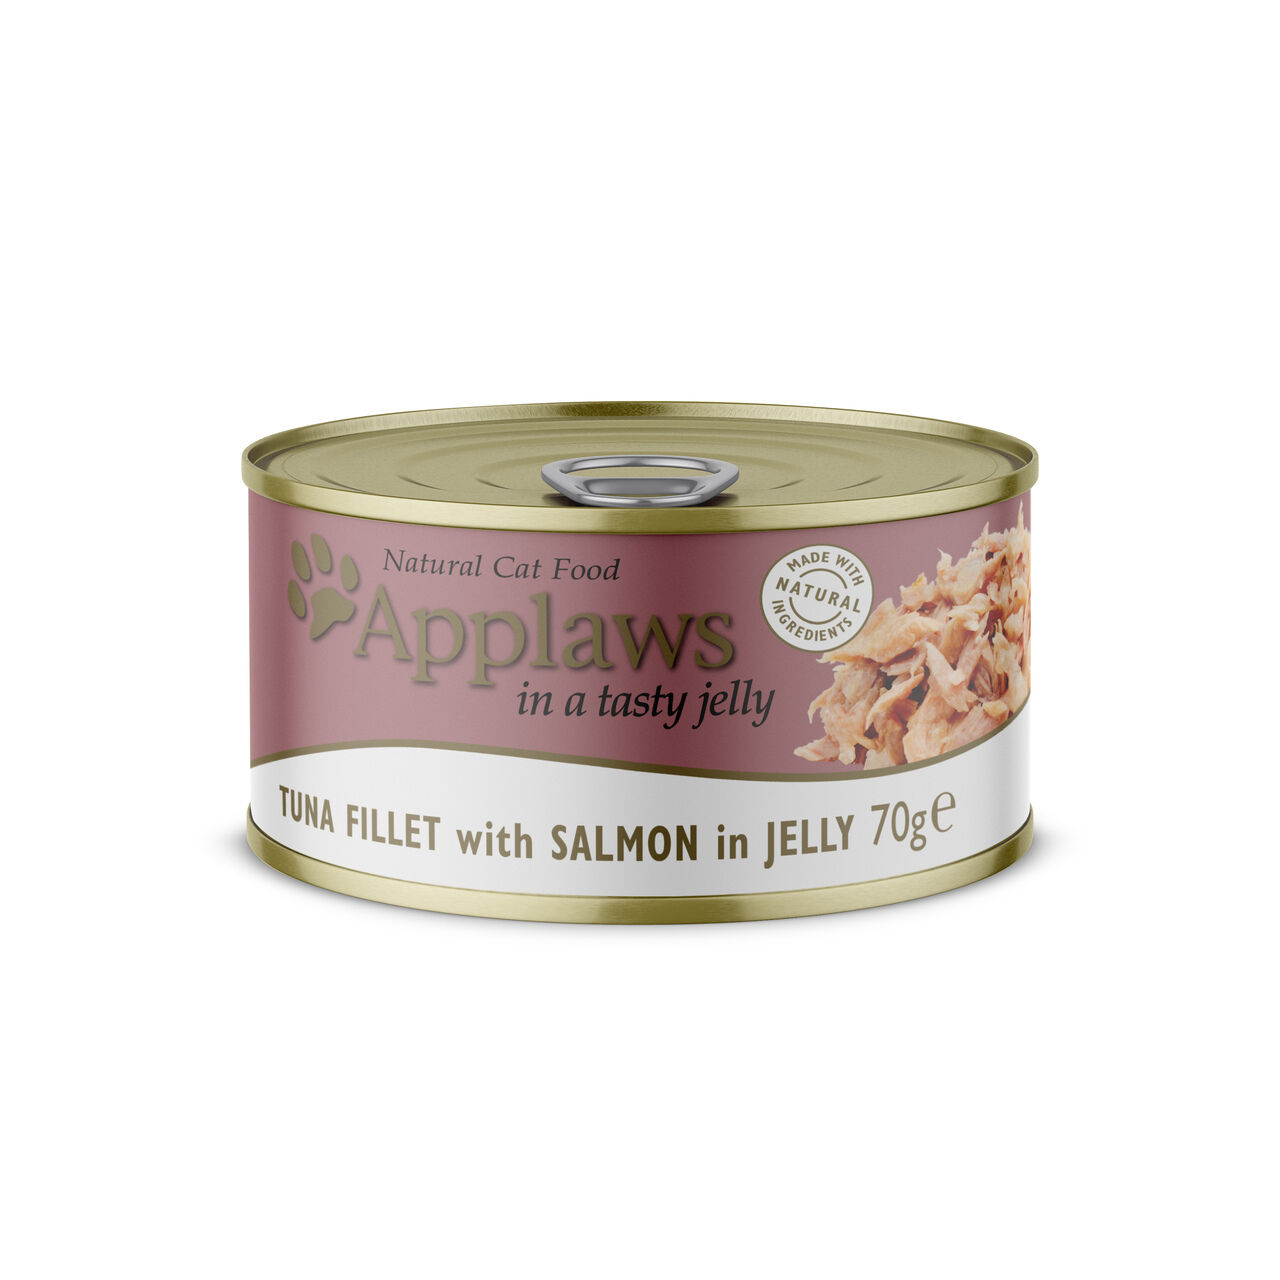 APPLAWS-Dose-Katze-Adult-70g-Thunfisch-und-Lachs-in-Jelly-feines-Filet-glutenfrei-Ergaenzungsfuttermittel-ohne-Zusaetze-62-89912